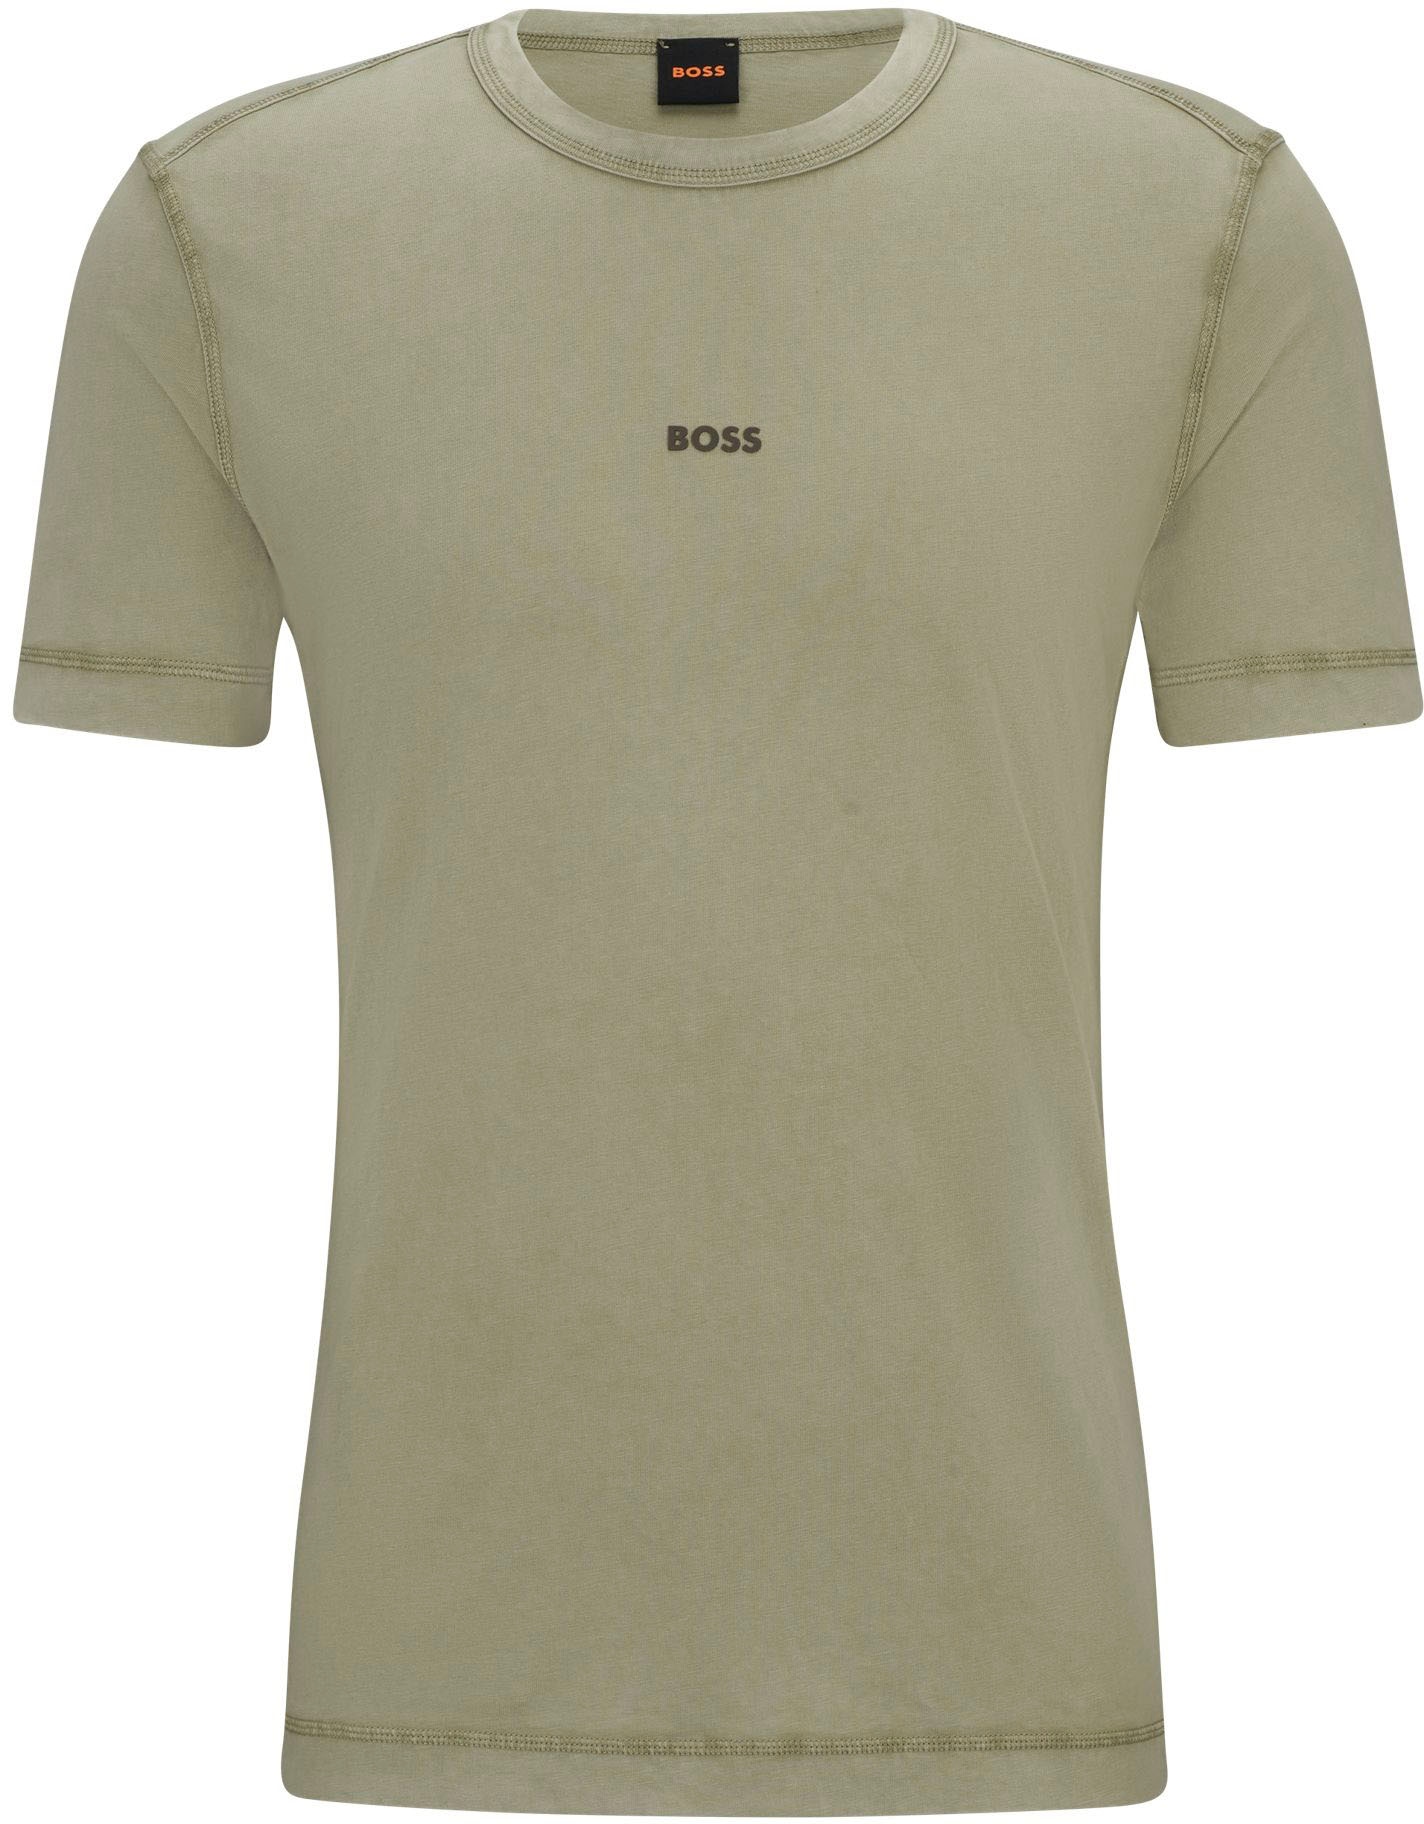 ORANGE mit Markenlabel »Tokks«, bei BOSS ORANGE T-Shirt ♕ BOSS